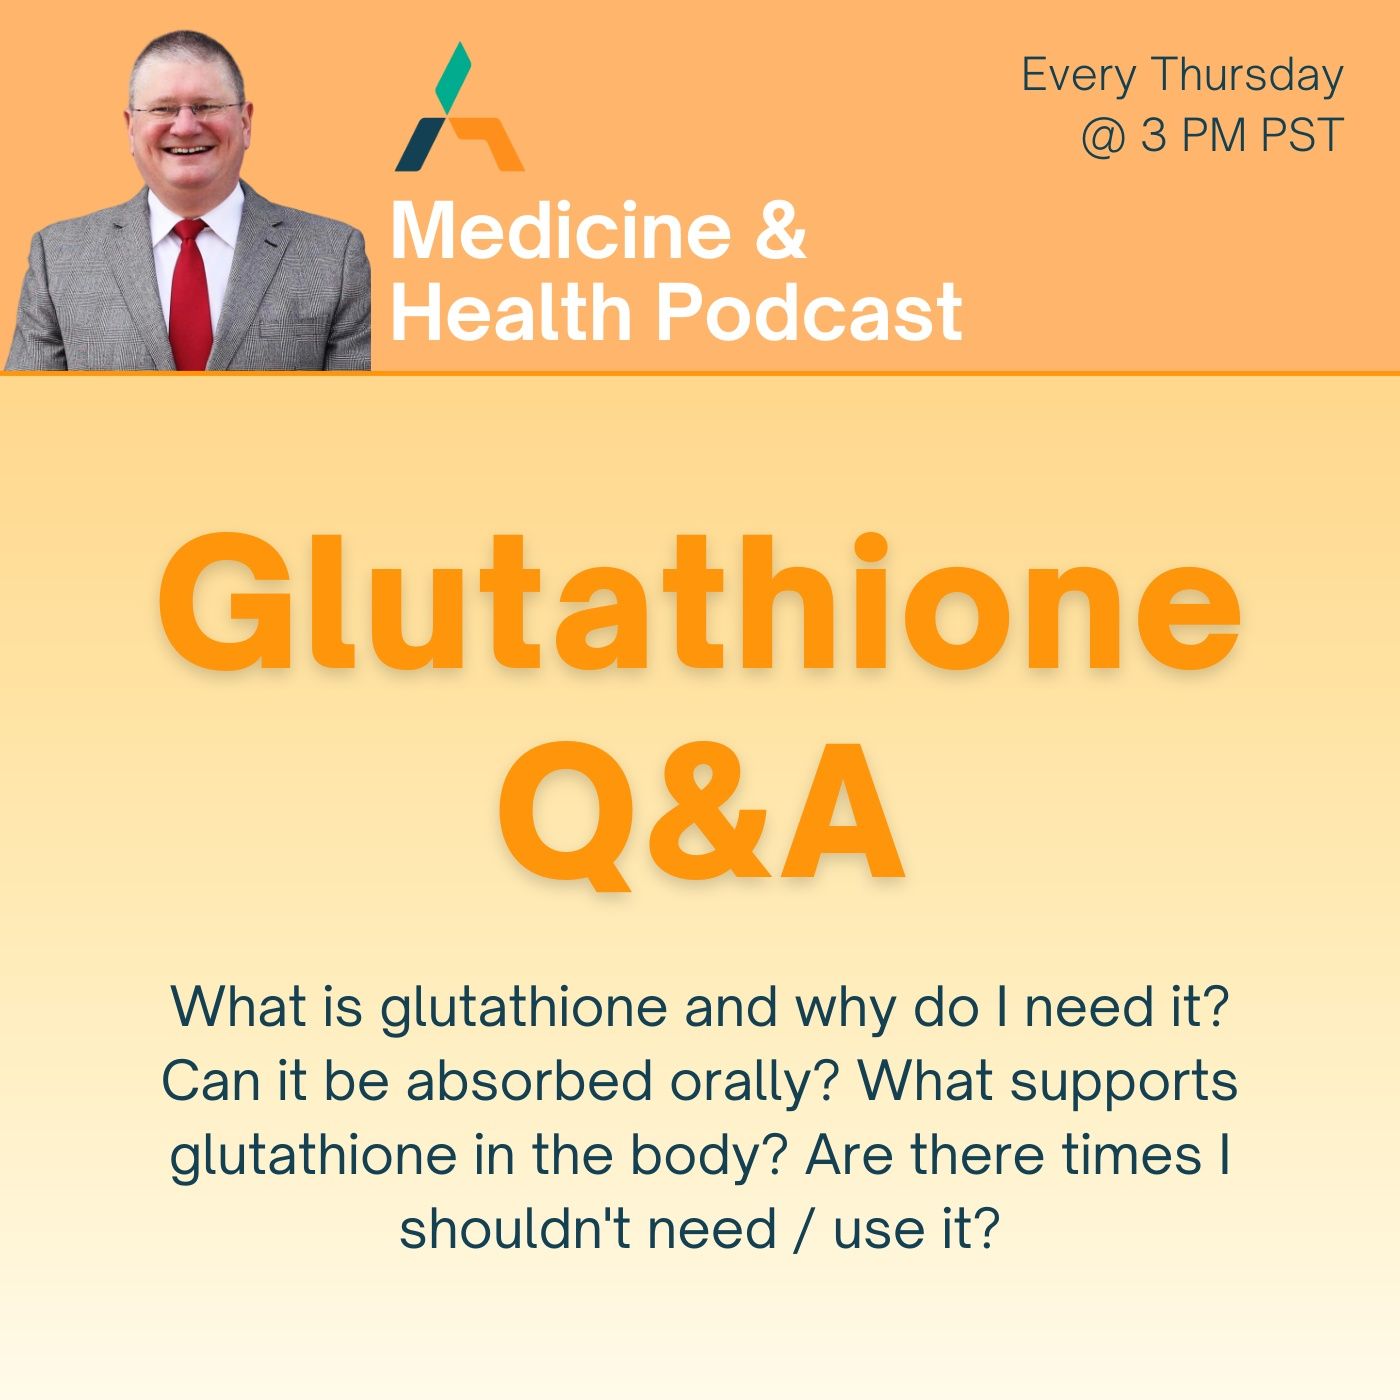 GLUTATHIONE Q&A